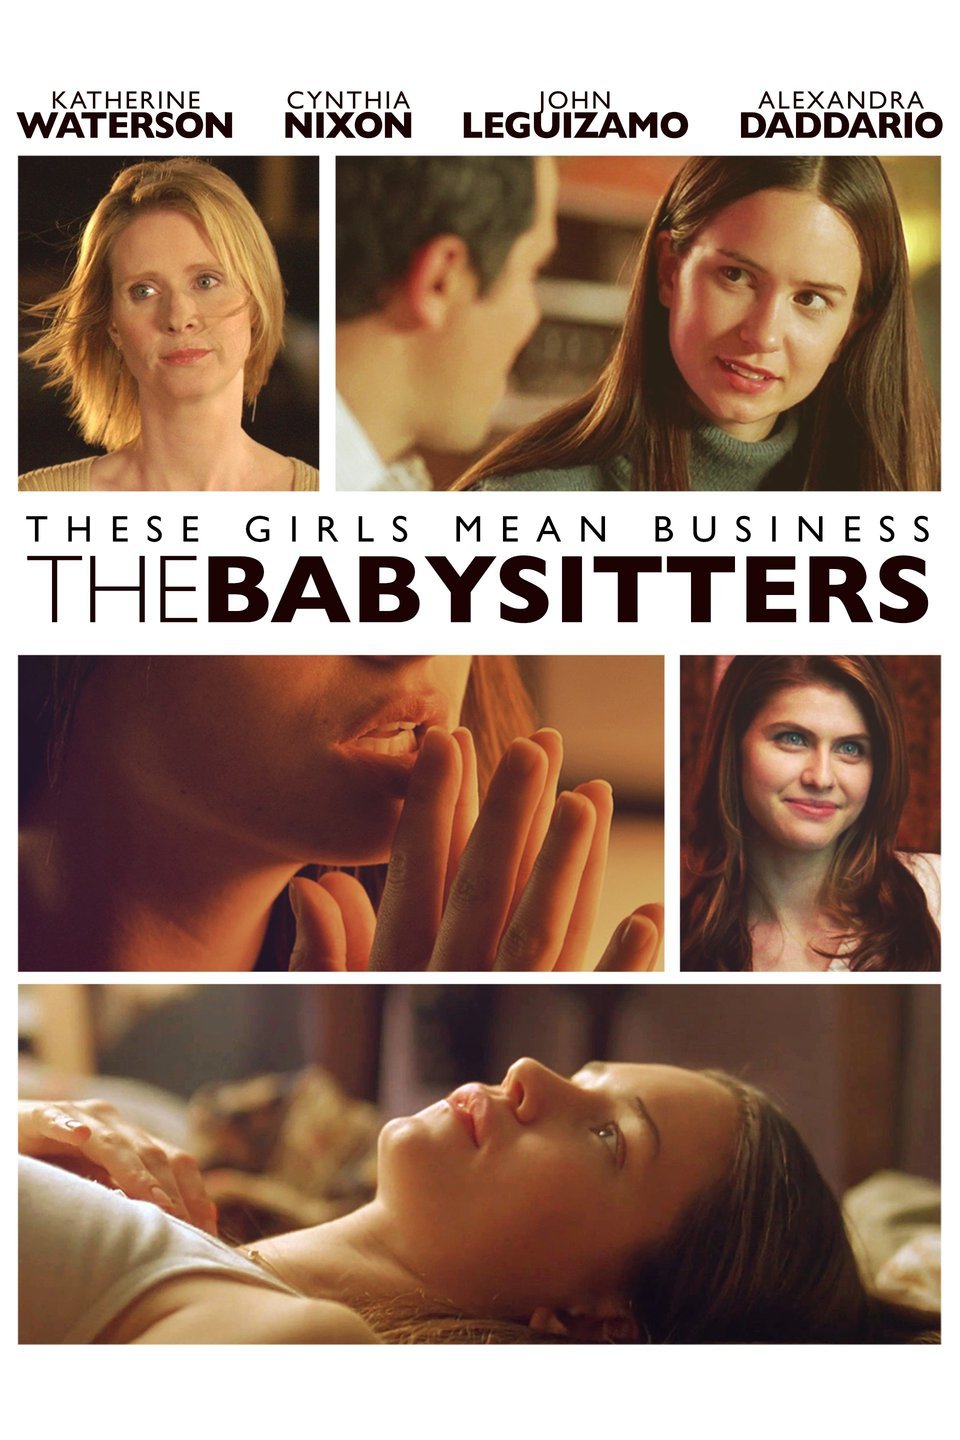 the babysitter movie cast